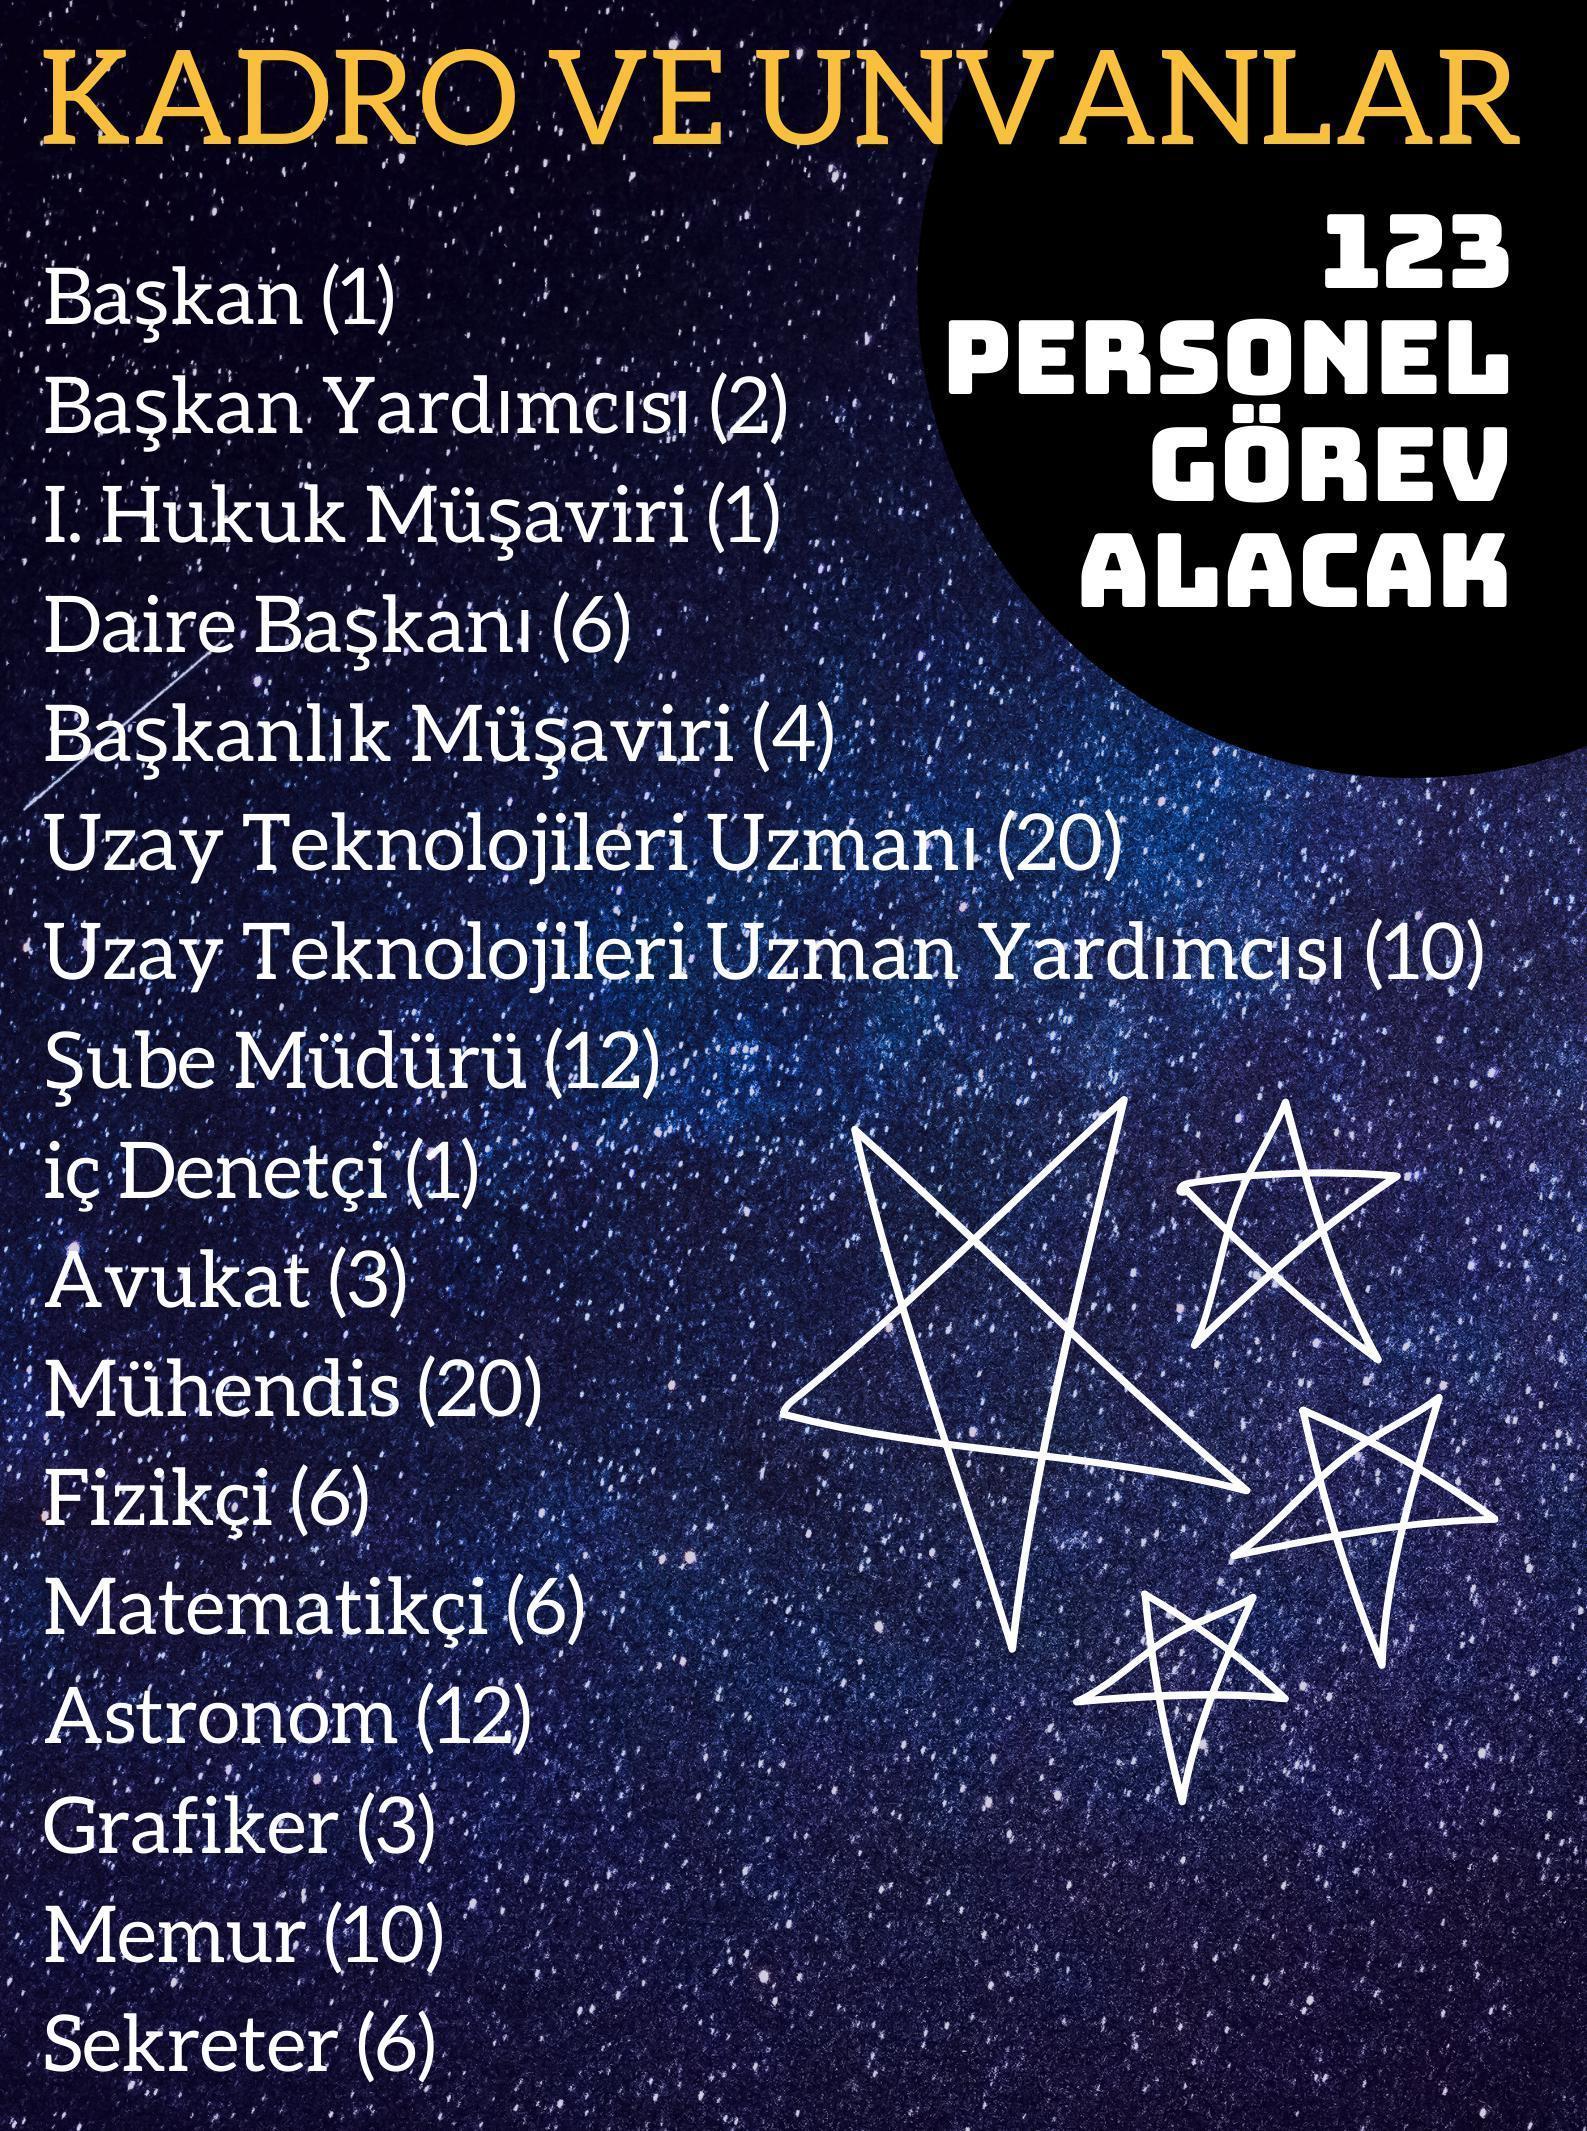 Türkiye Uzay Ajansında 123 personel görev yapacak